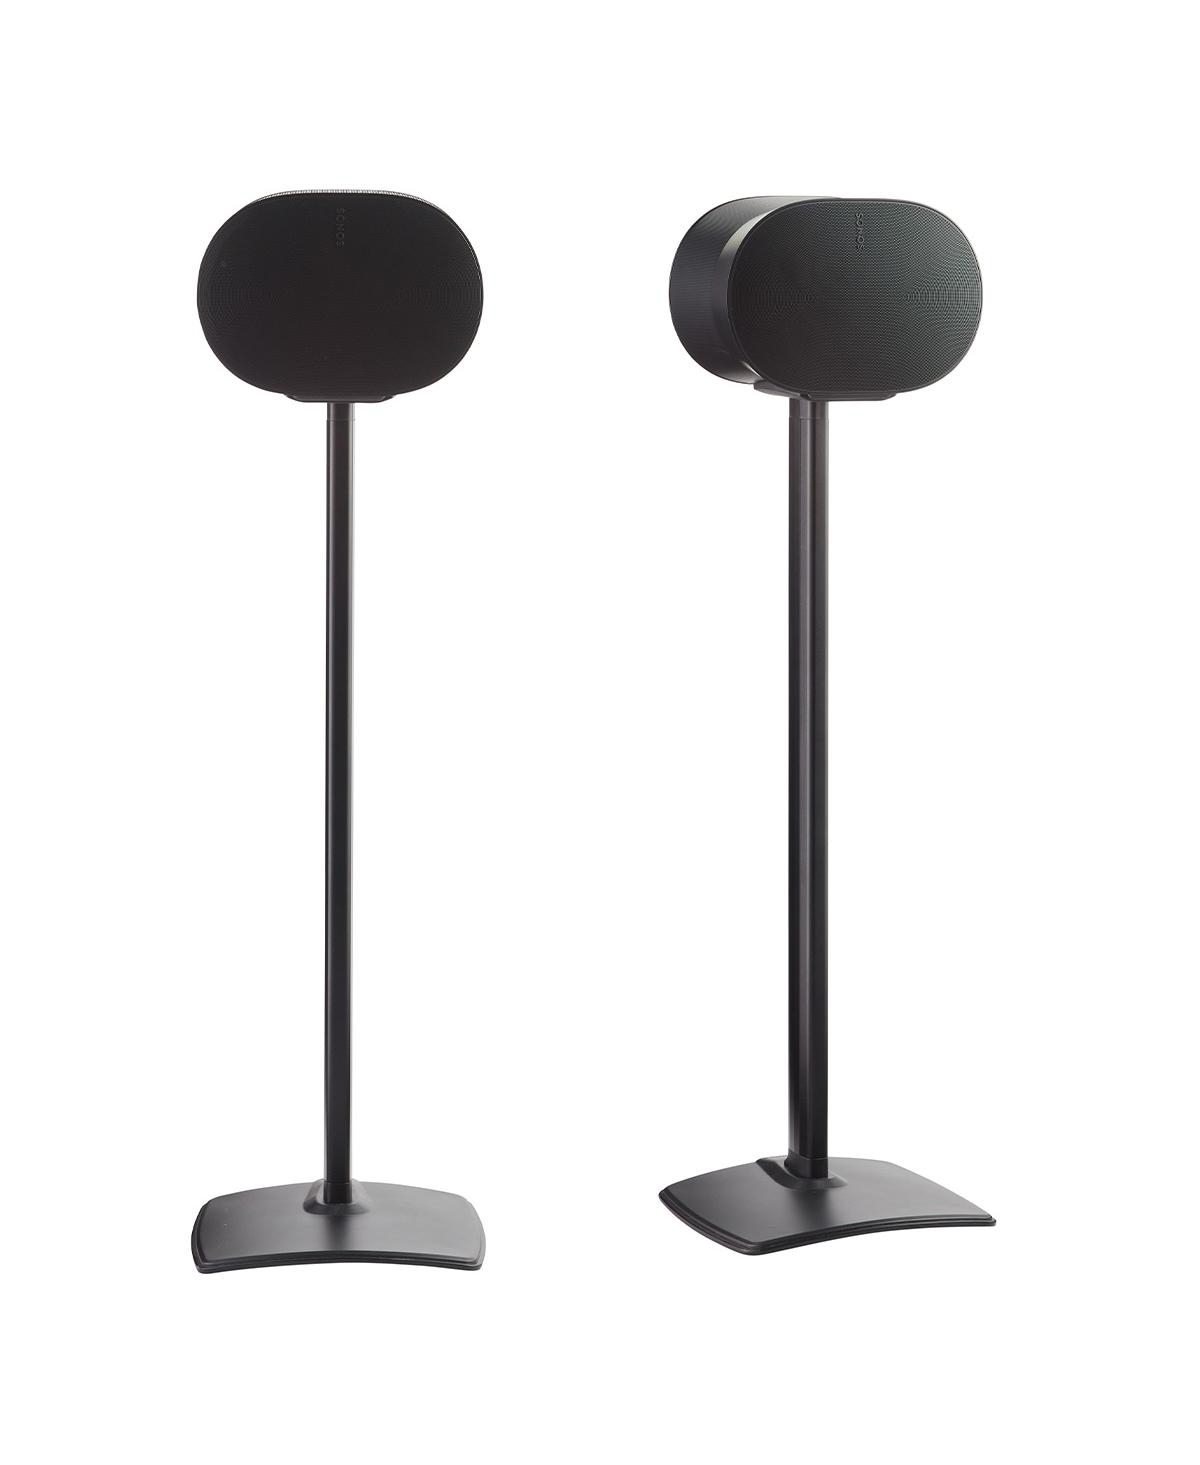 Sanus Fixed-height Speaker Stands For Sonos Era 300 In Black